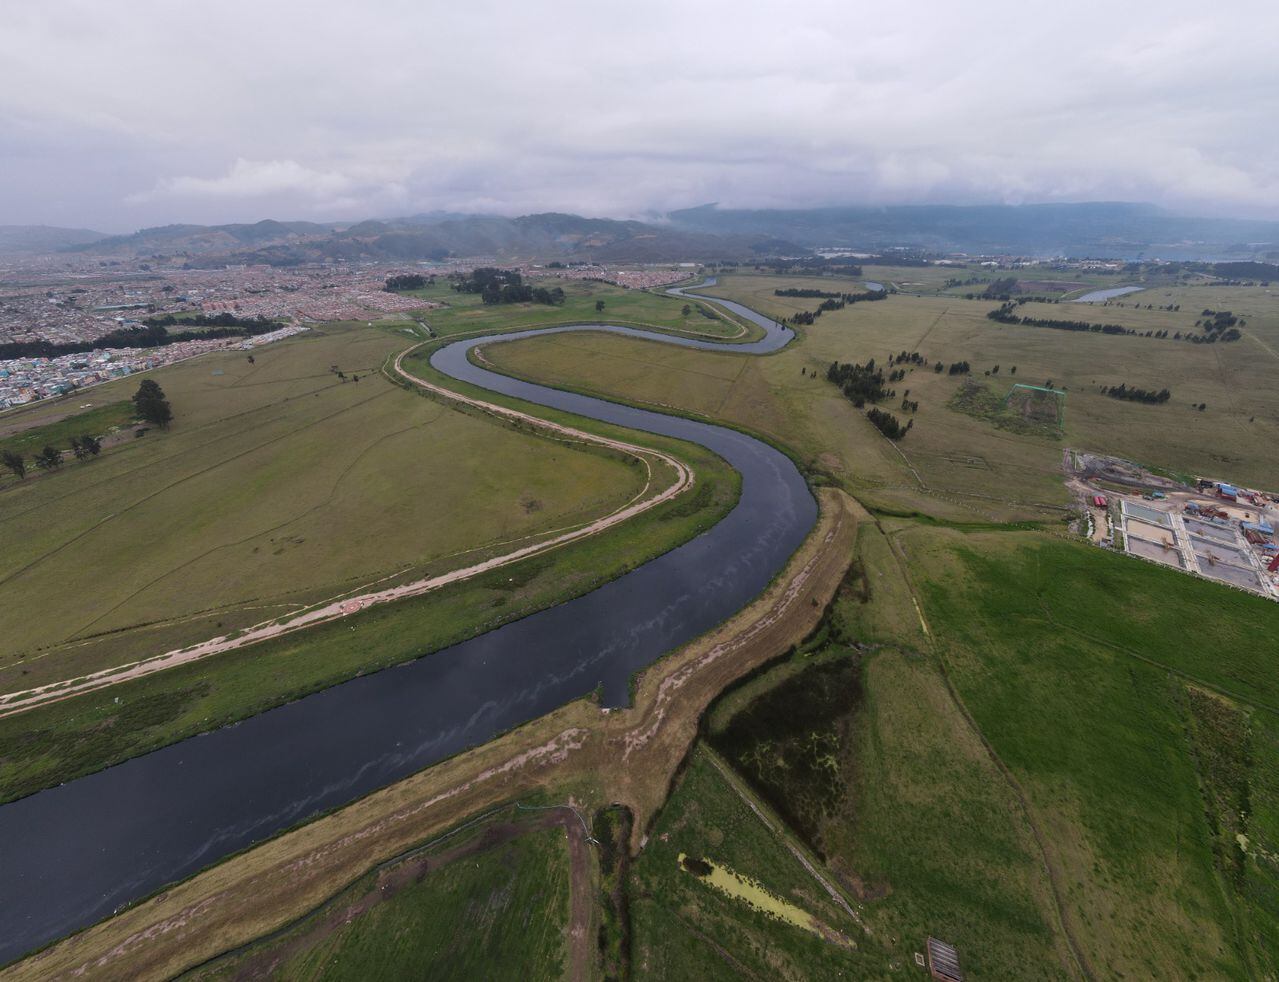 La PTAR Canoas ayudará a descontaminar el río Bogotá.